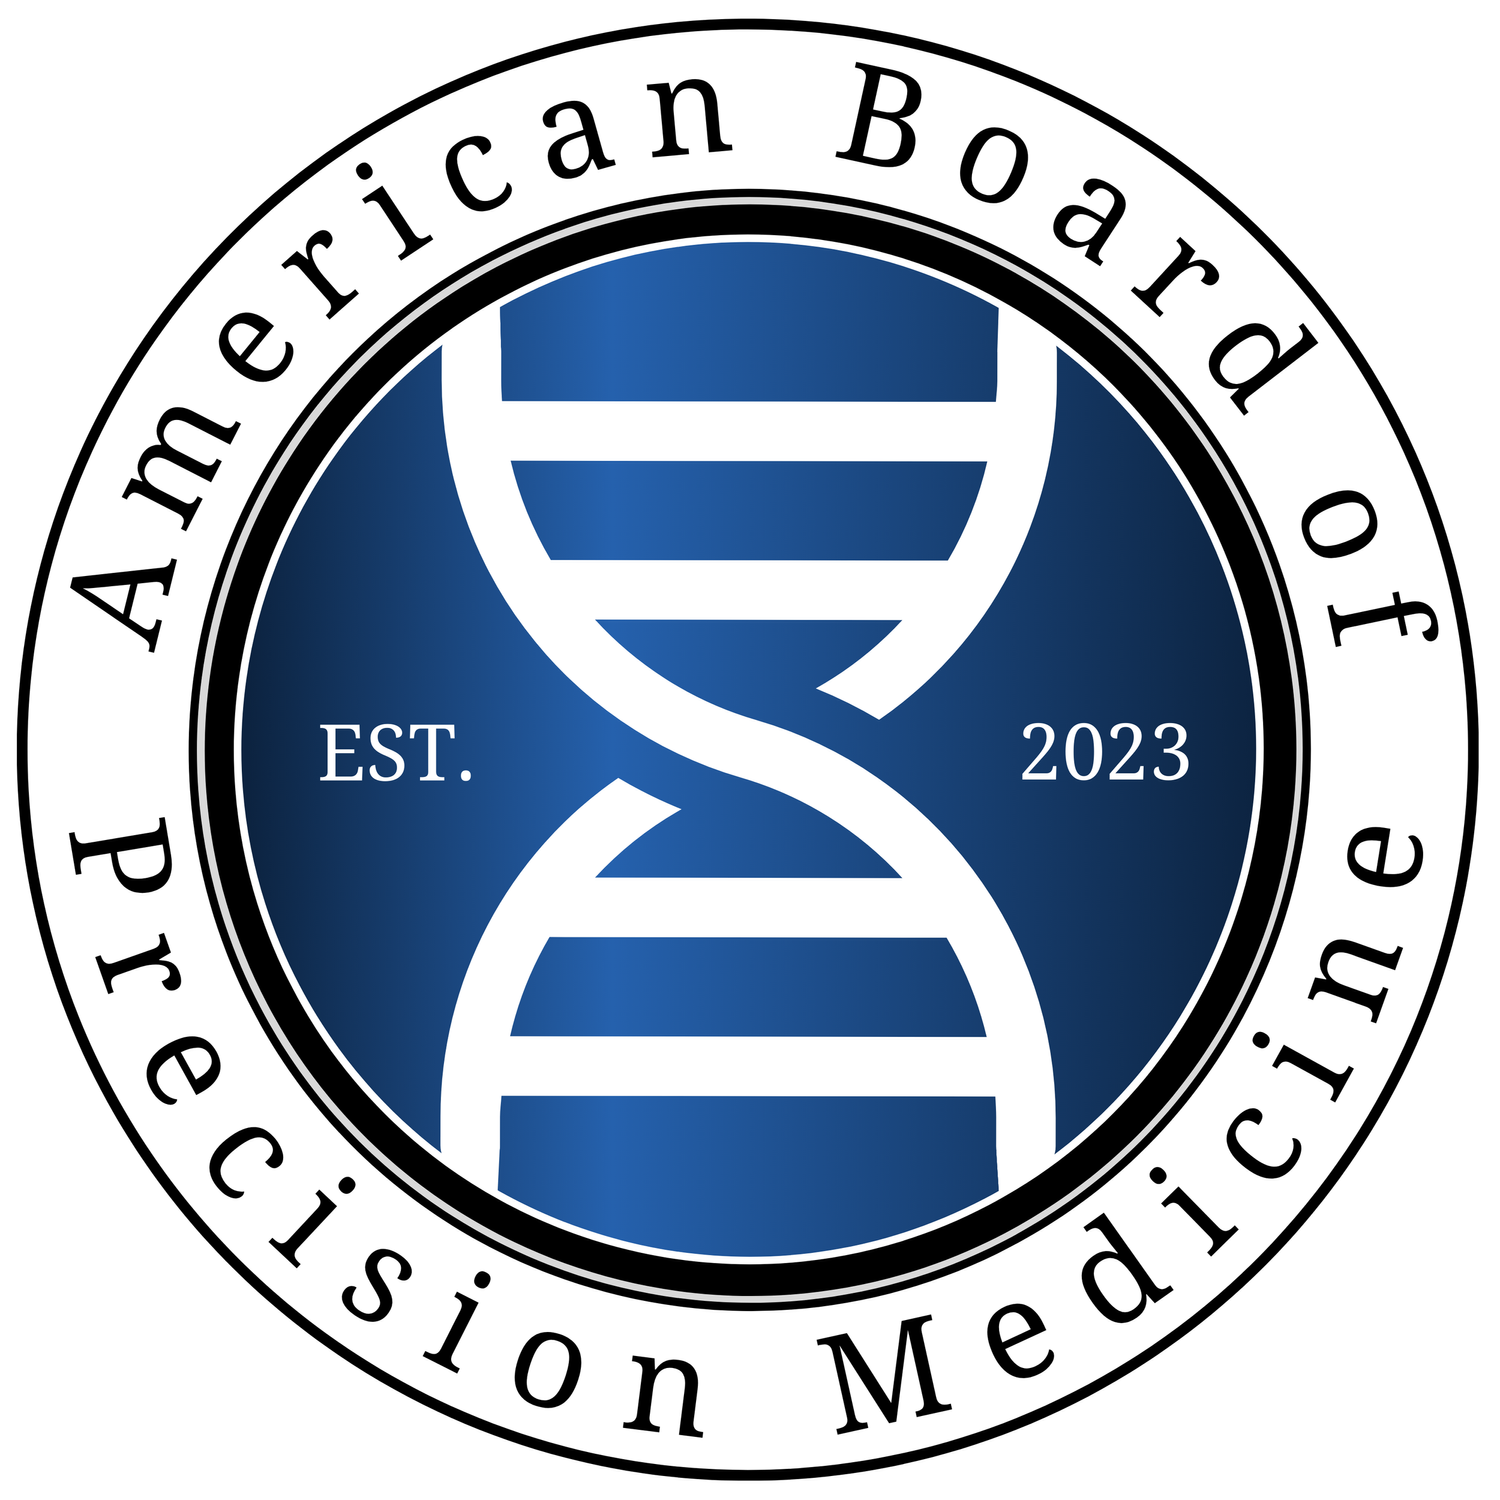 The American Board of Precision Medicine